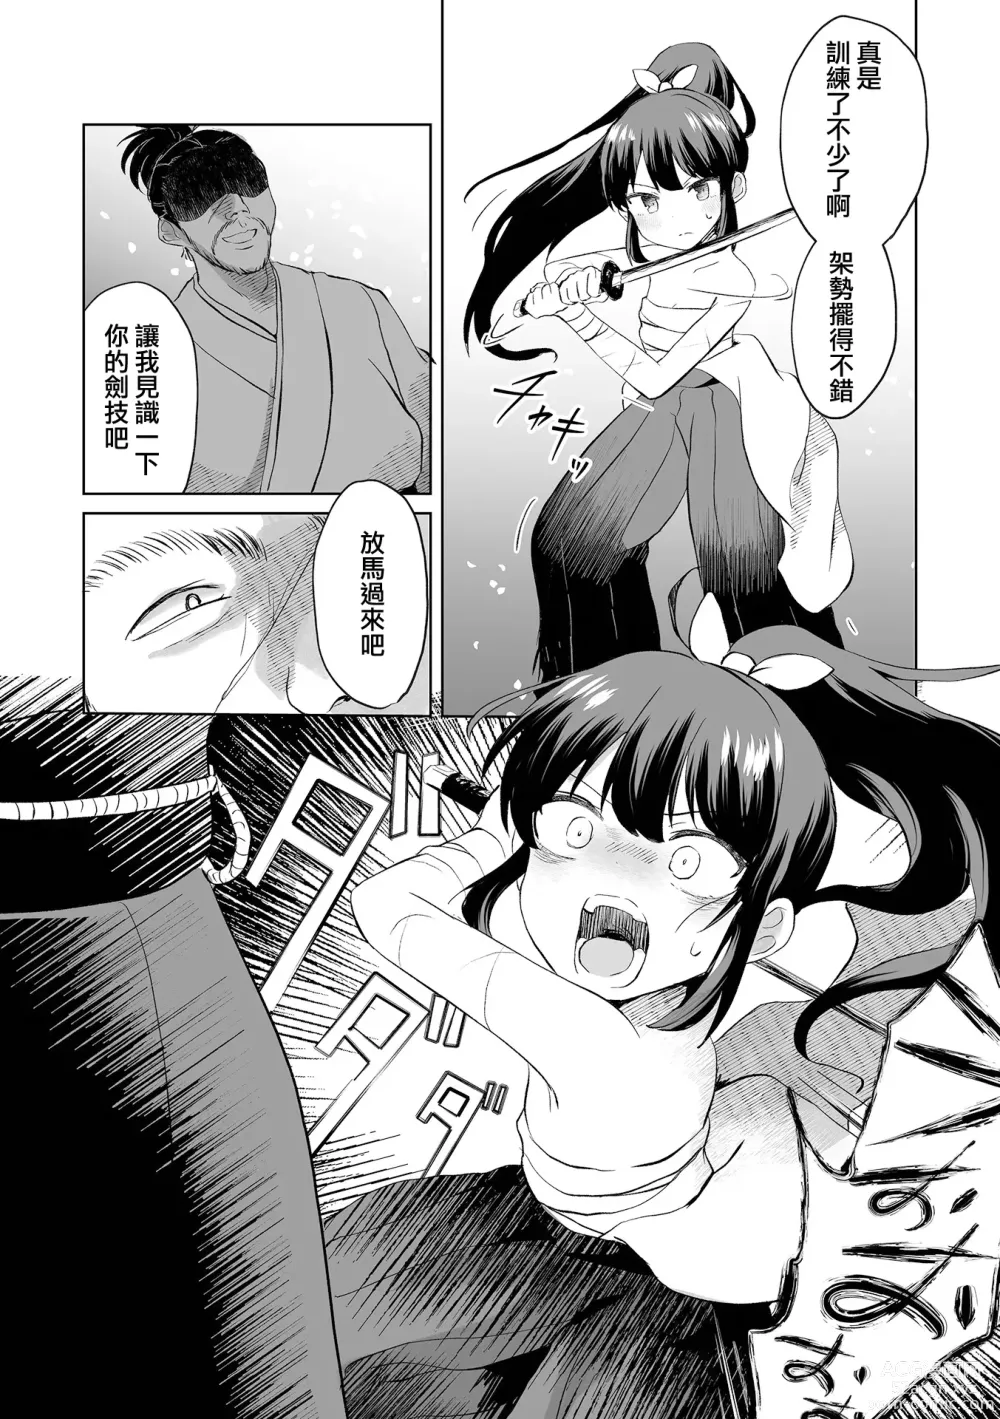 Page 3 of manga Ouka Chiru